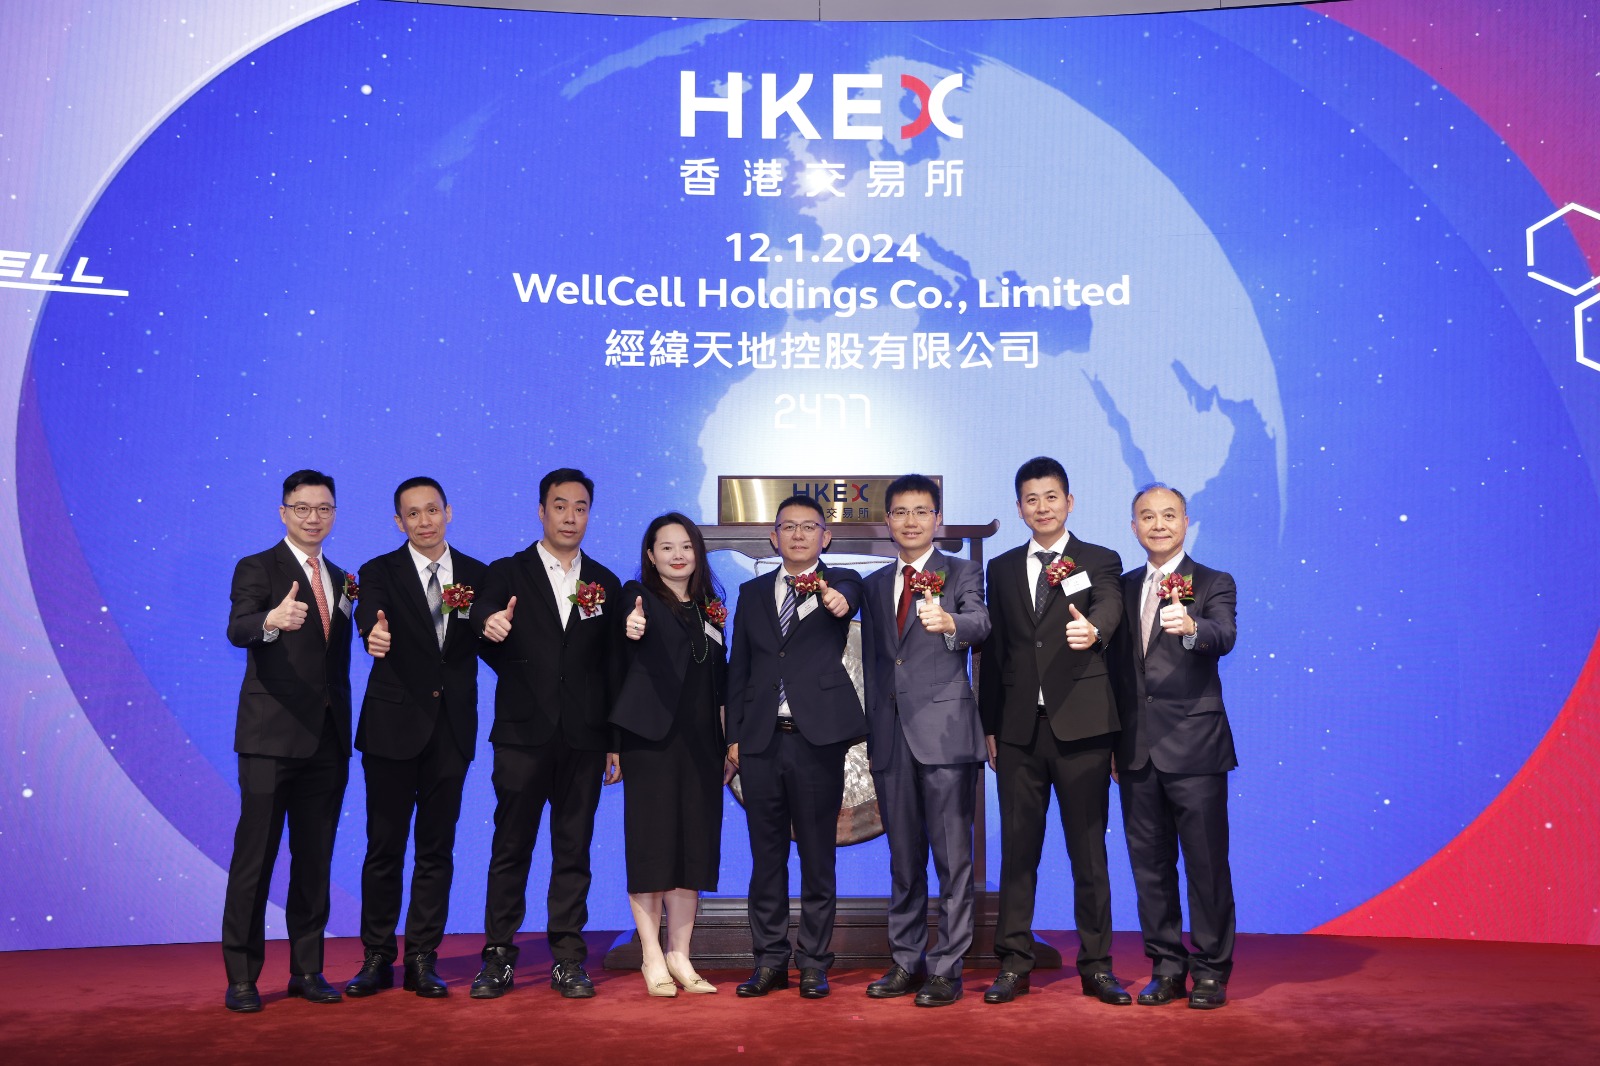 Légende : M. Jia Zhengyi, directeur exécutif, président du conseil d'administration et PDG de WellCell (4e à droite), M. Kang Hong, secrétaire général adjoint du gouvernement populaire municipal de Zhuhai (3e à droite).  M. Cong Bin, directeur exécutif (2e à gauche), M. Lin Qihao, directeur non exécutif (3e à gauche), M. Yu Tao, directeur général adjoint (2e à droite), Mme Chen Shenmao, directrice générale adjointe et contrôleur financier (4e à gauche), les co-sponsors M. Derek Chan de Halcyon Capital (1er à droite) et M. Thomas Yu, directeur général d'Eddid Capital (1er à gauche), ont assisté à la cérémonie d'inscription.